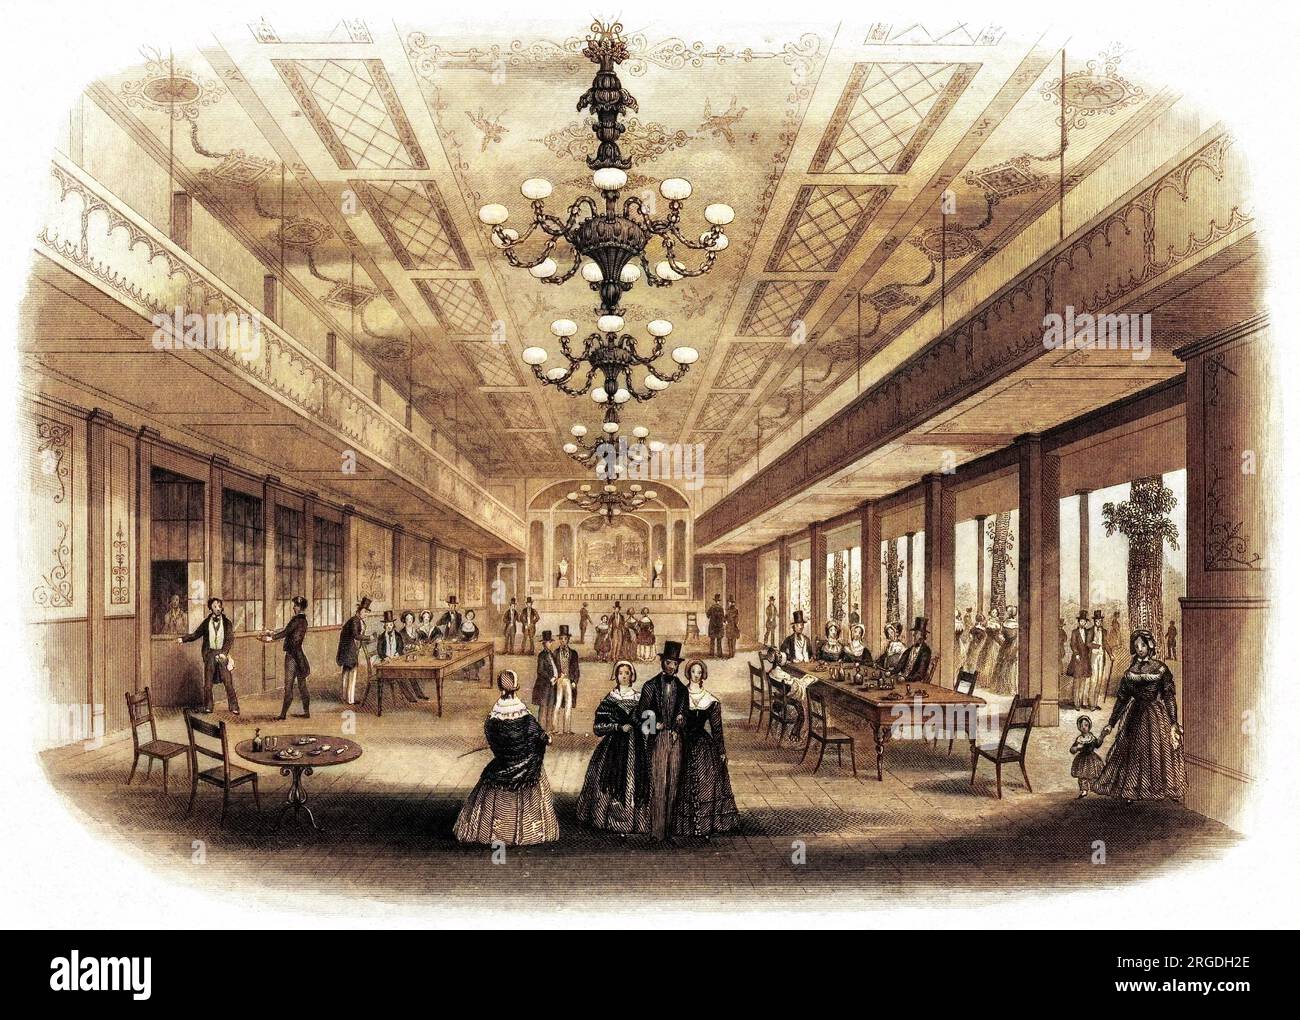 Das Innere des Bankettsaals, das oft von Verbänden und Gesellschaften für ihre Feierlichkeiten genutzt wird. Stockfoto